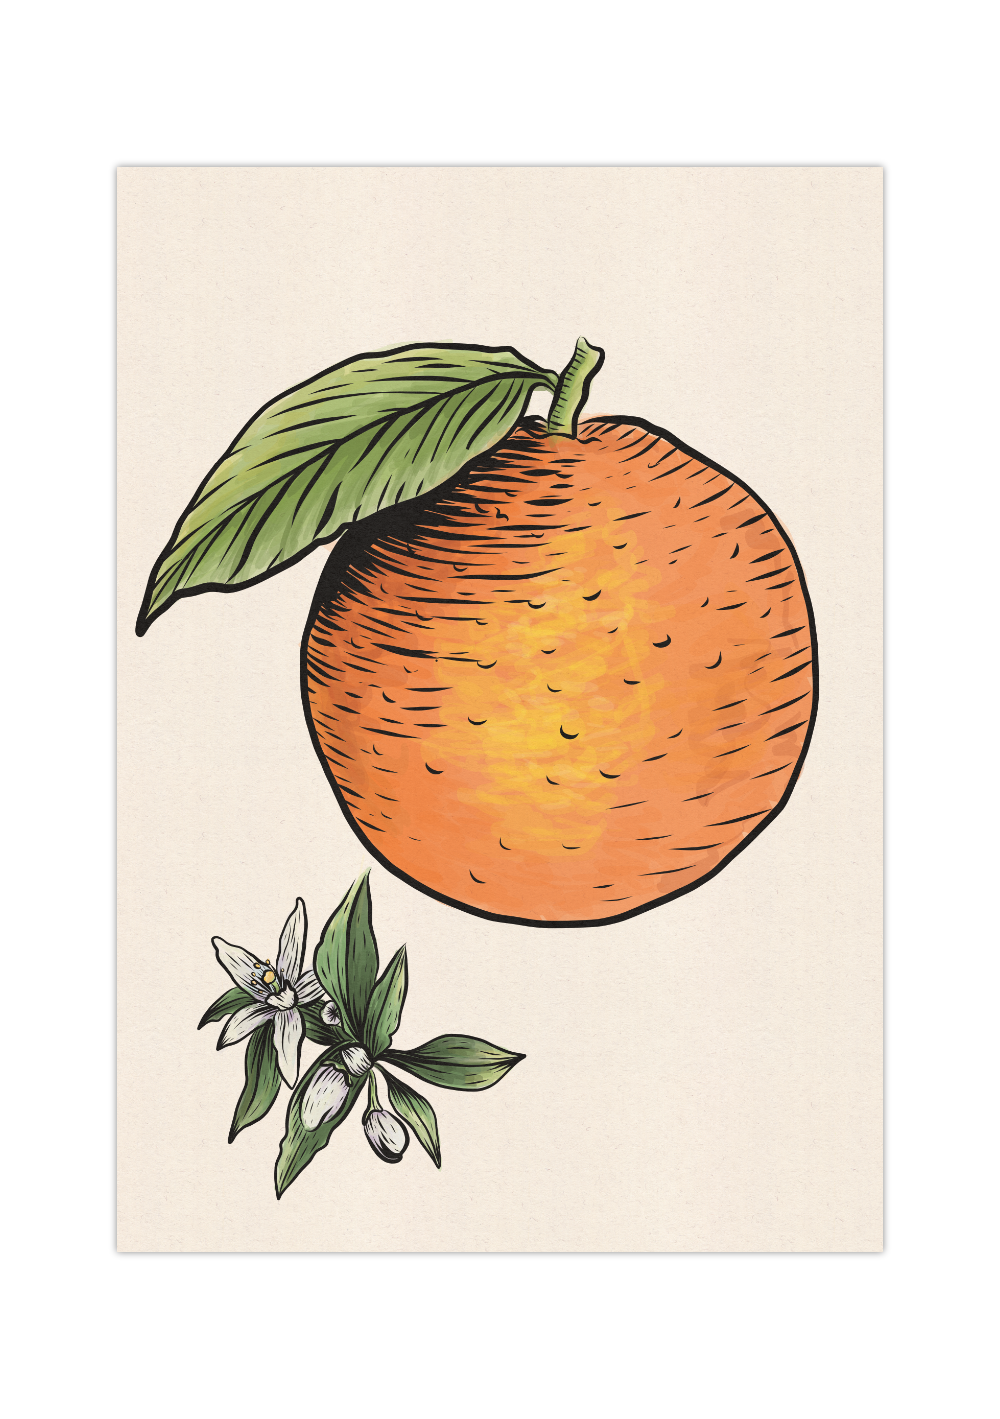 Das Poster zeigt eine im Vintage Stil gehaltene Orange, inklusive der Orangenblüte. Das Poster passt perfekt in die Küche oder in das Esszimmer, passt aber auch in jeden anderen Raum.